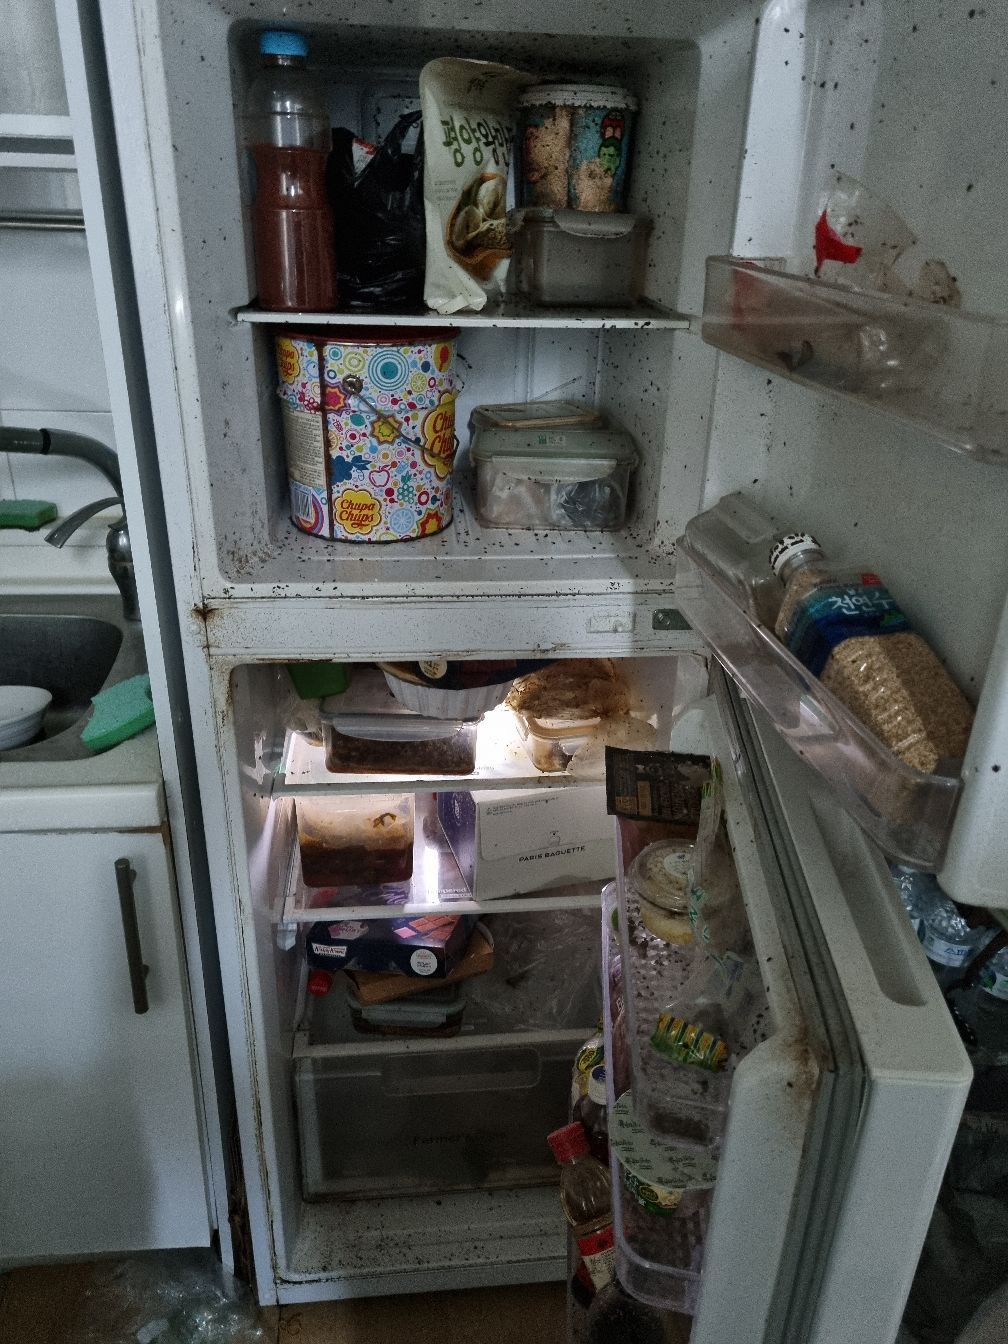 오염된 냉장고